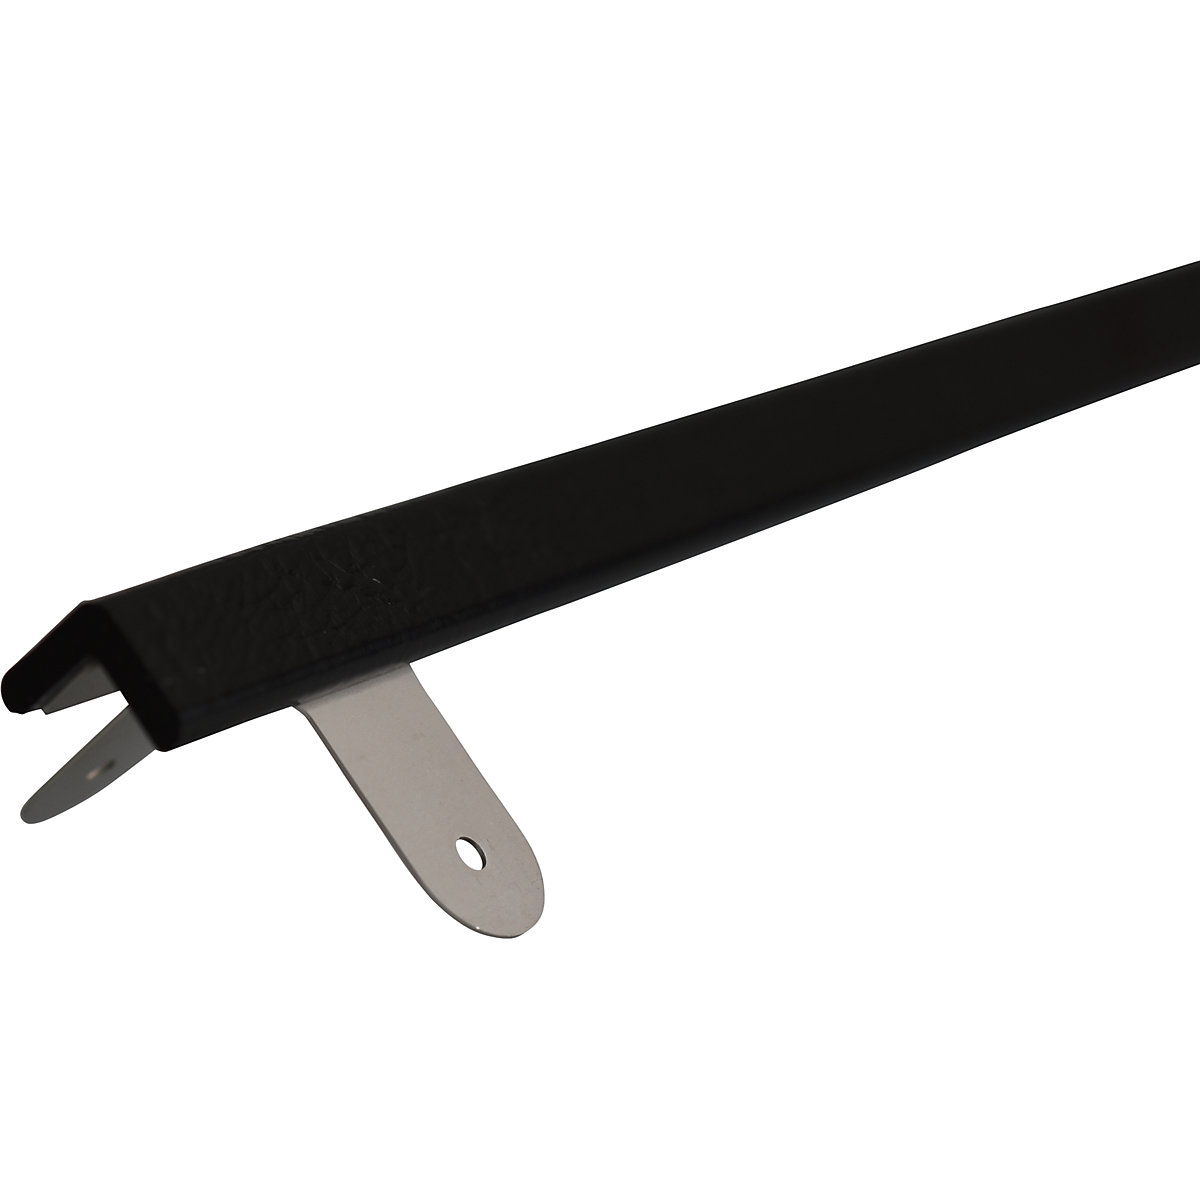 Protecție pentru colț Knuffi® cu șină de montaj – SHG, tip E, bucată de 1 m, negru